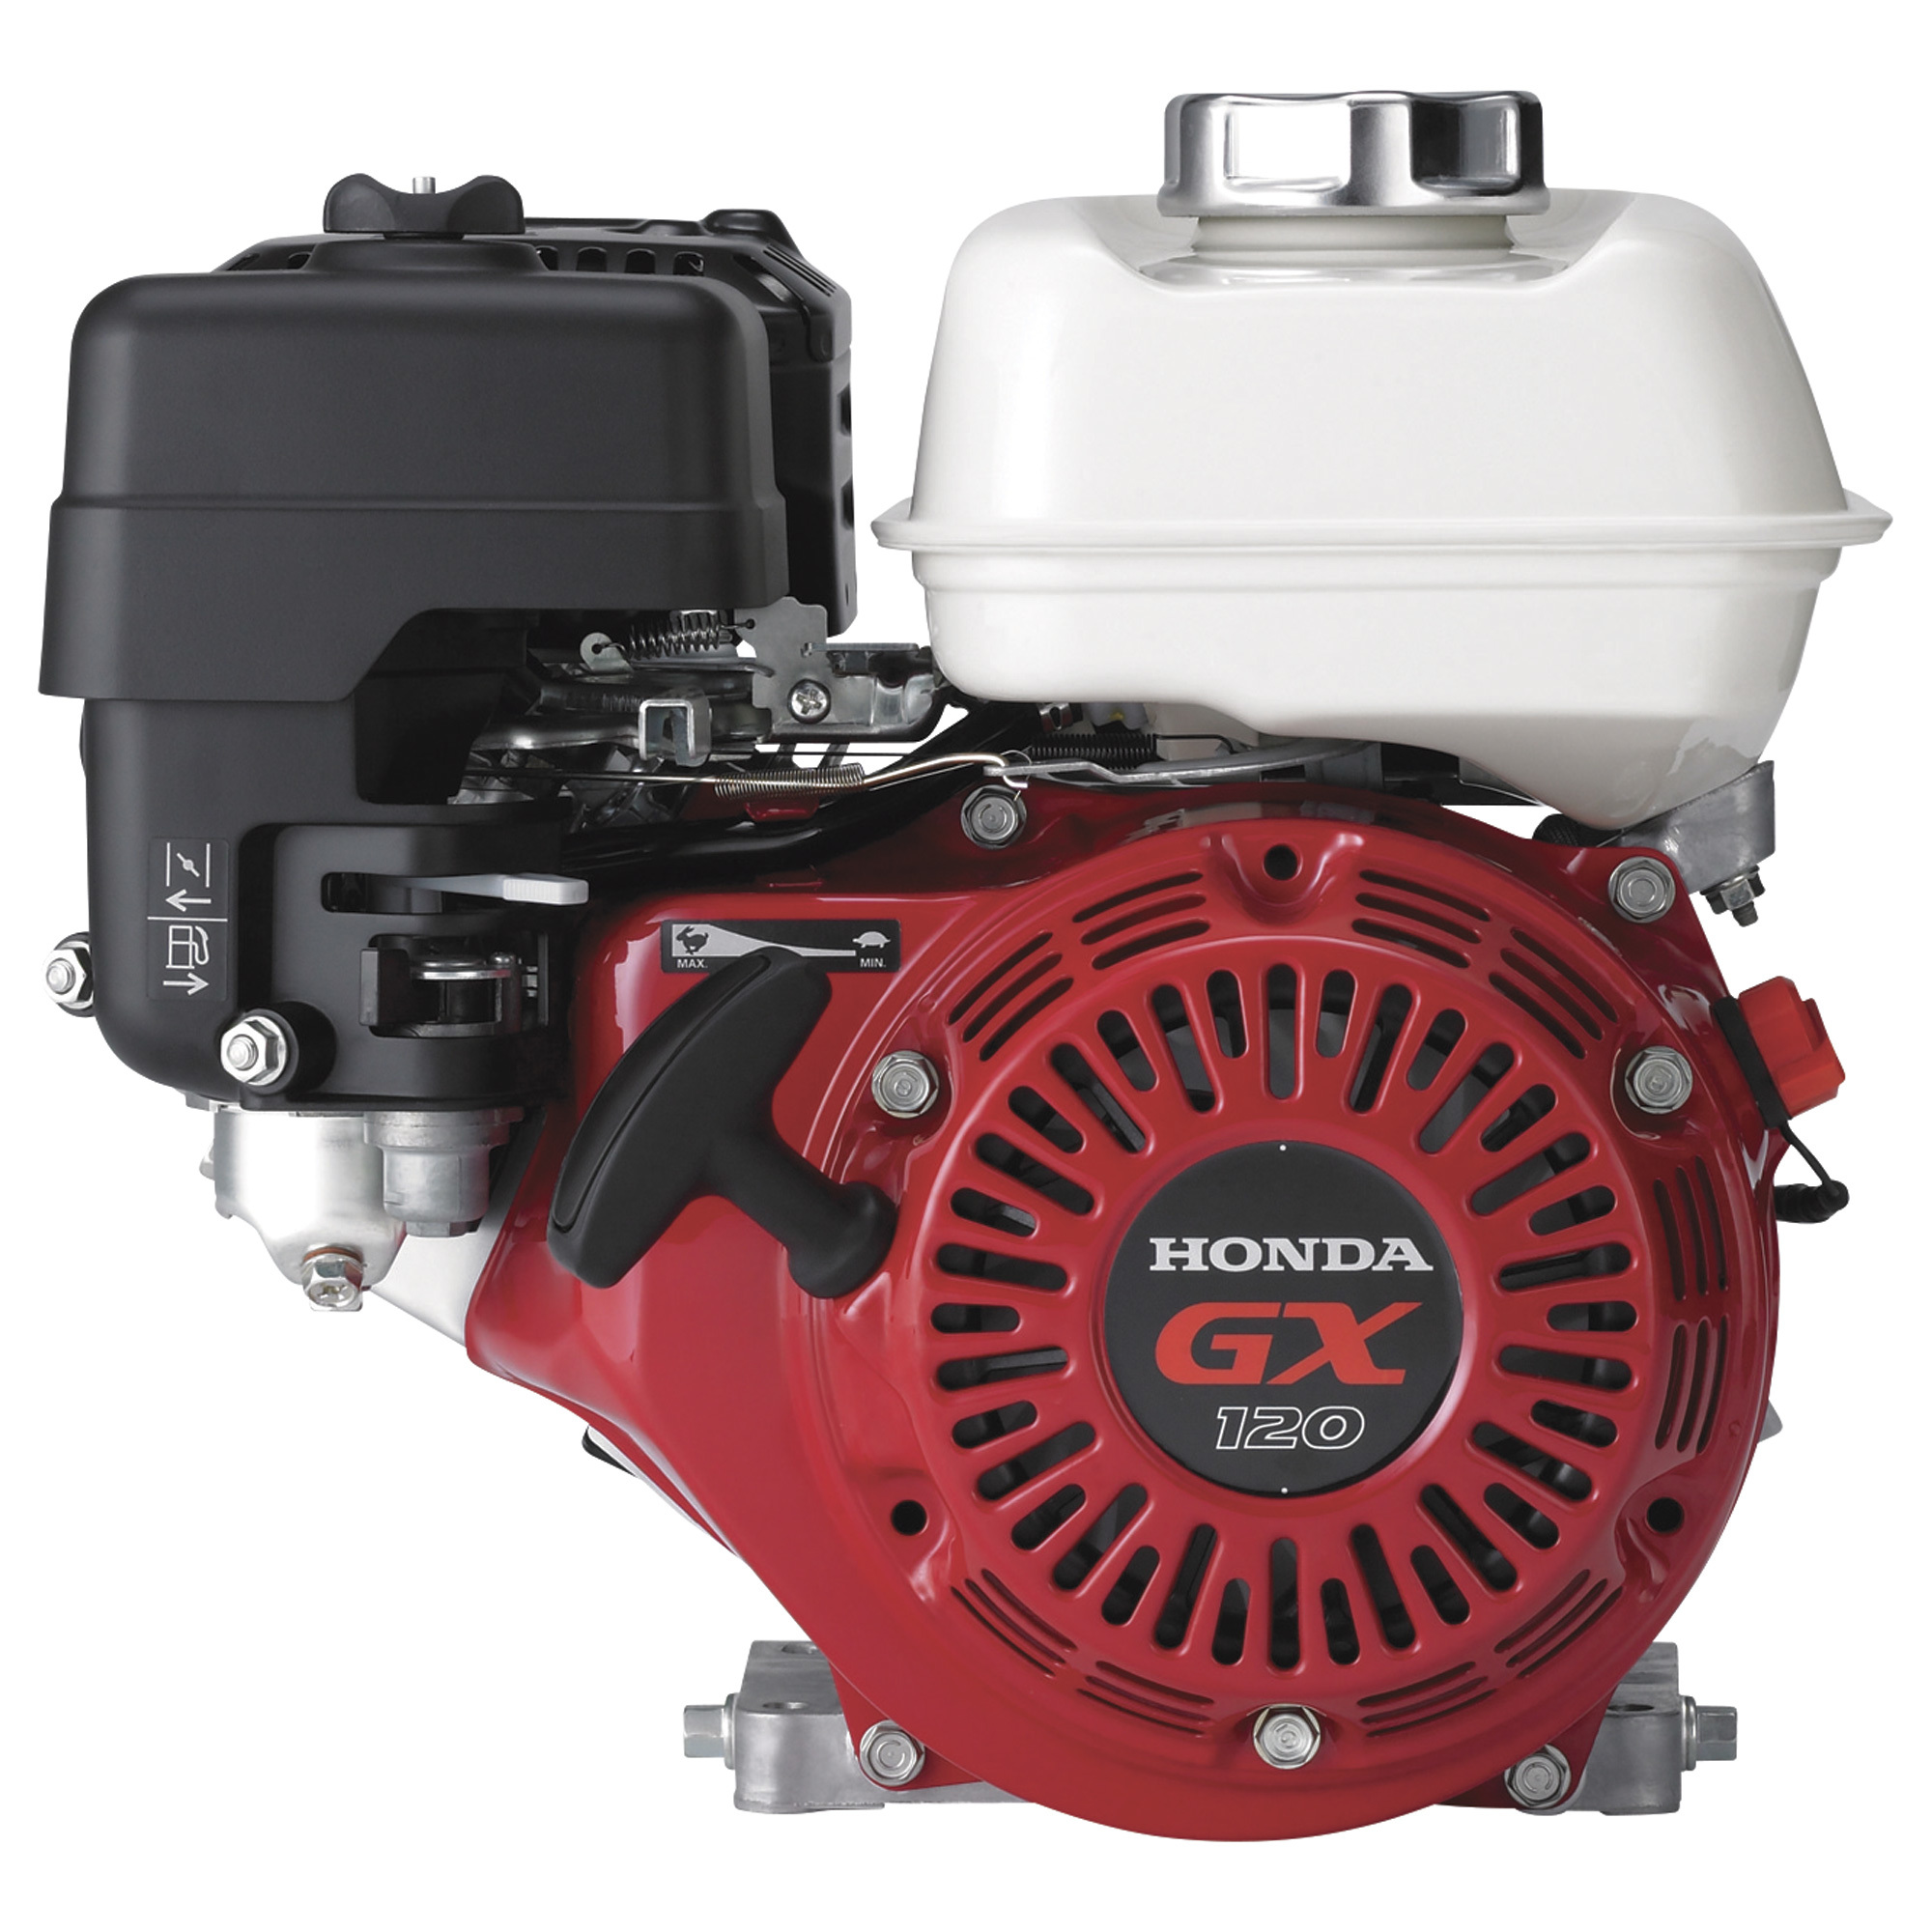 Honda Horizontal OHV Engine for Non-Honda Pumps â 118cc, GX Series, Threaded 5/8Inch x 2 7/16Inch Shaft, Model GX120UT2TX2